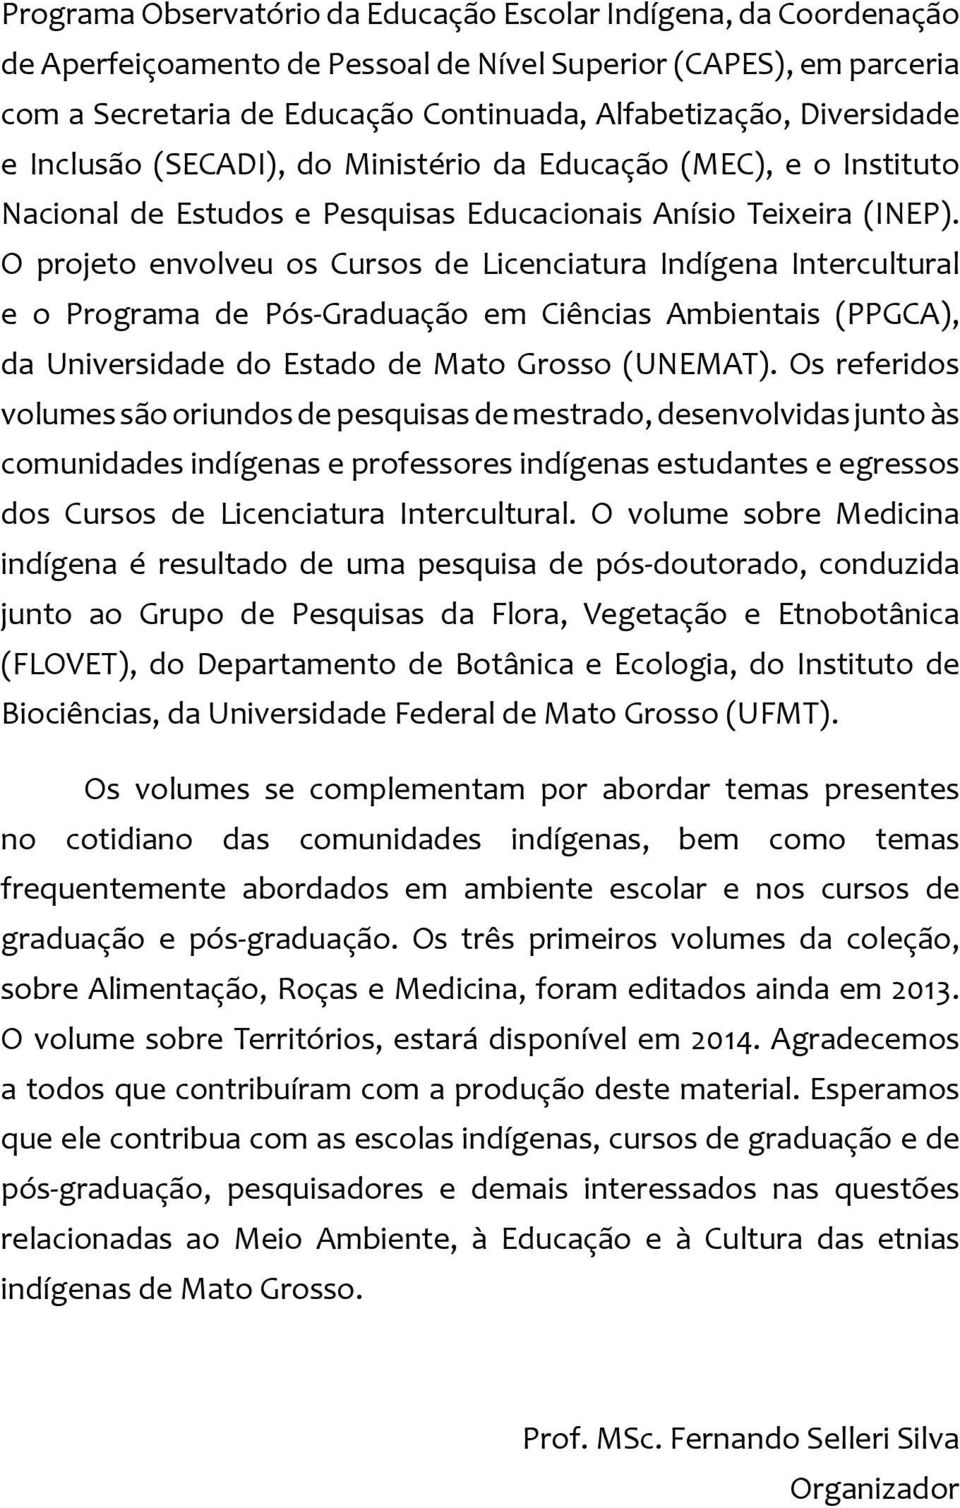 O projeto envolveu os Cursos de Licenciatura Indígena Intercultural e o Programa de Pós-Graduação em Ciências Ambientais (PPGCA), da Universidade do Estado de Mato Grosso (UNEMAT).